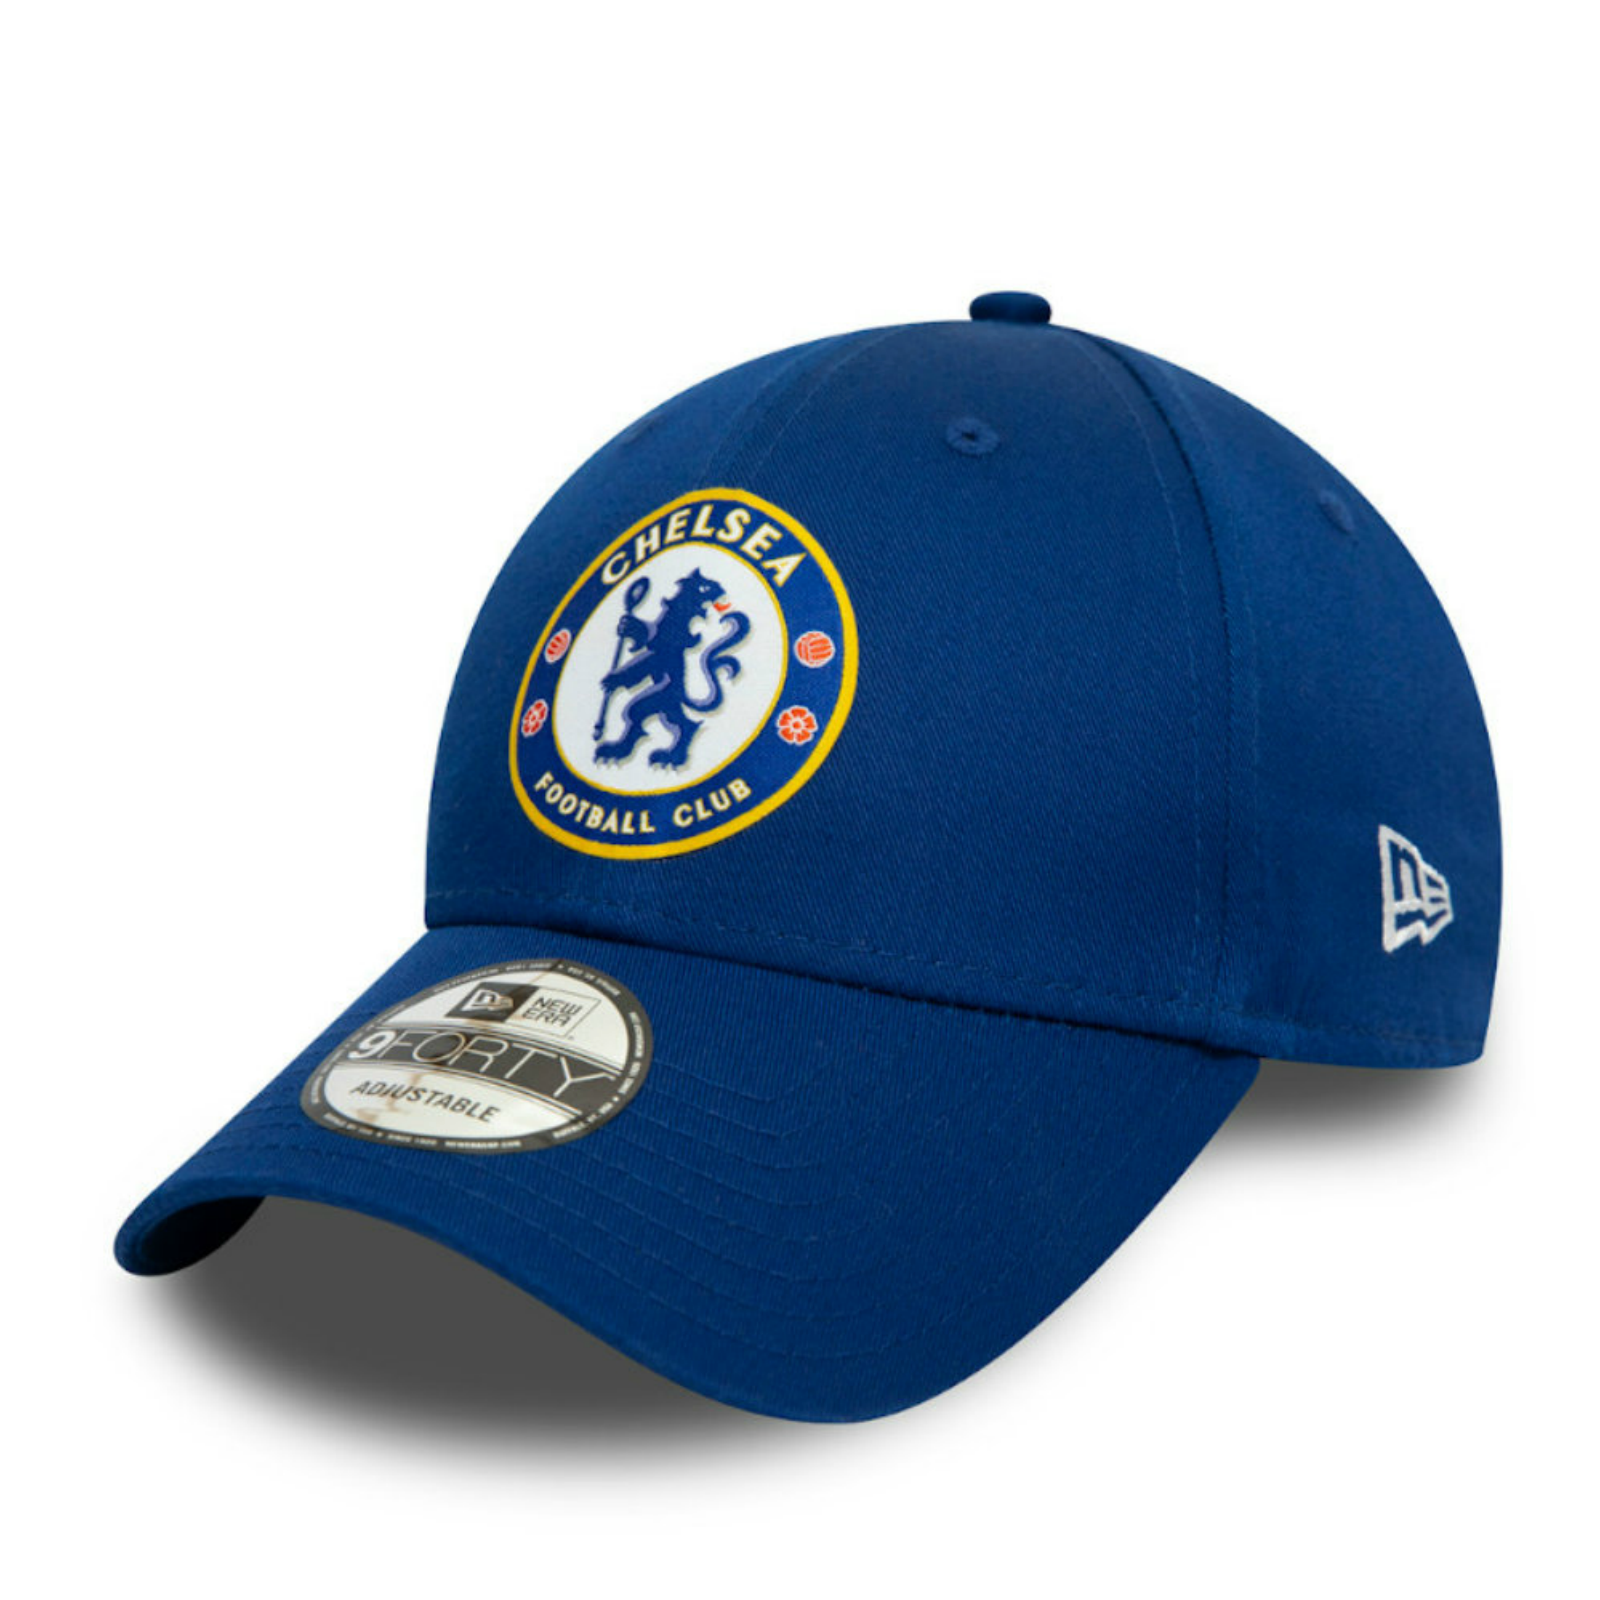 Blue New Chelsea Men's Adult Stretch Fit Lion Cap Hat 